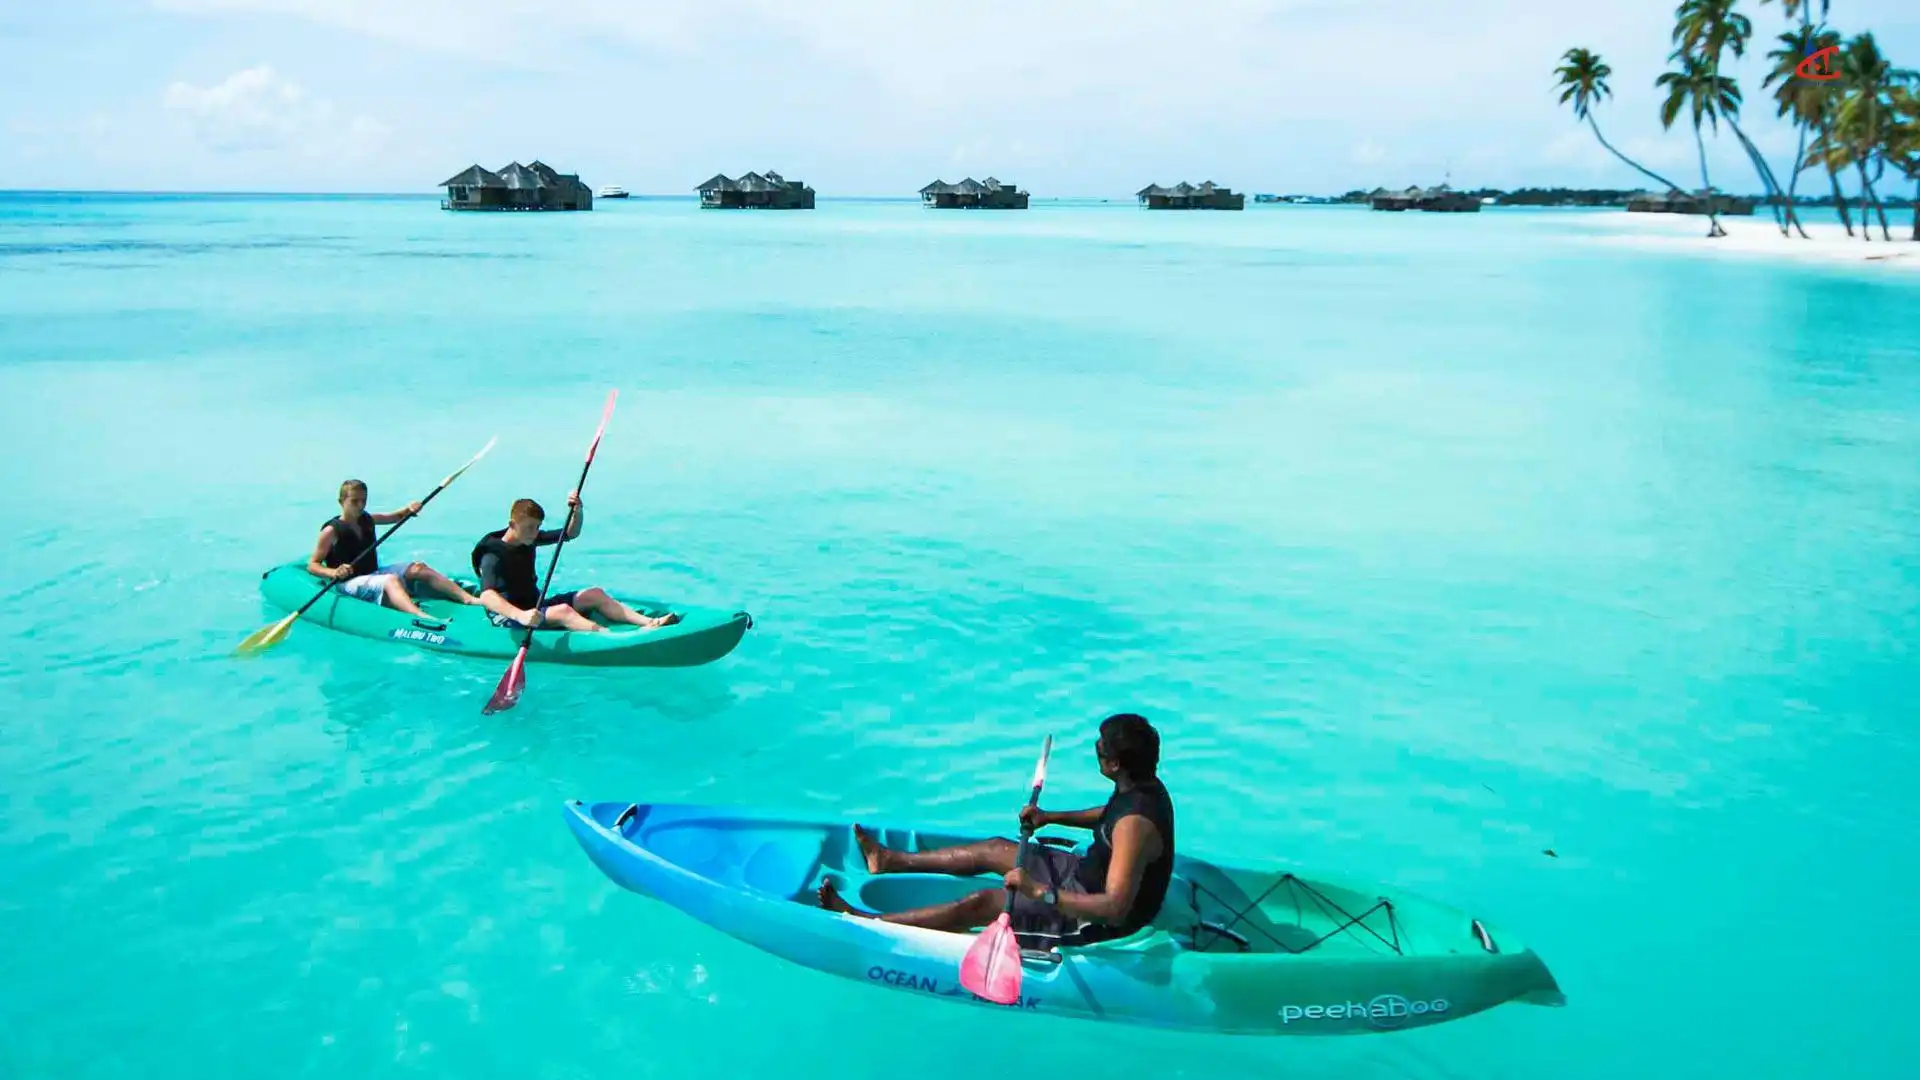 Sun Siyam Iru Veli Maldives Water Sports 